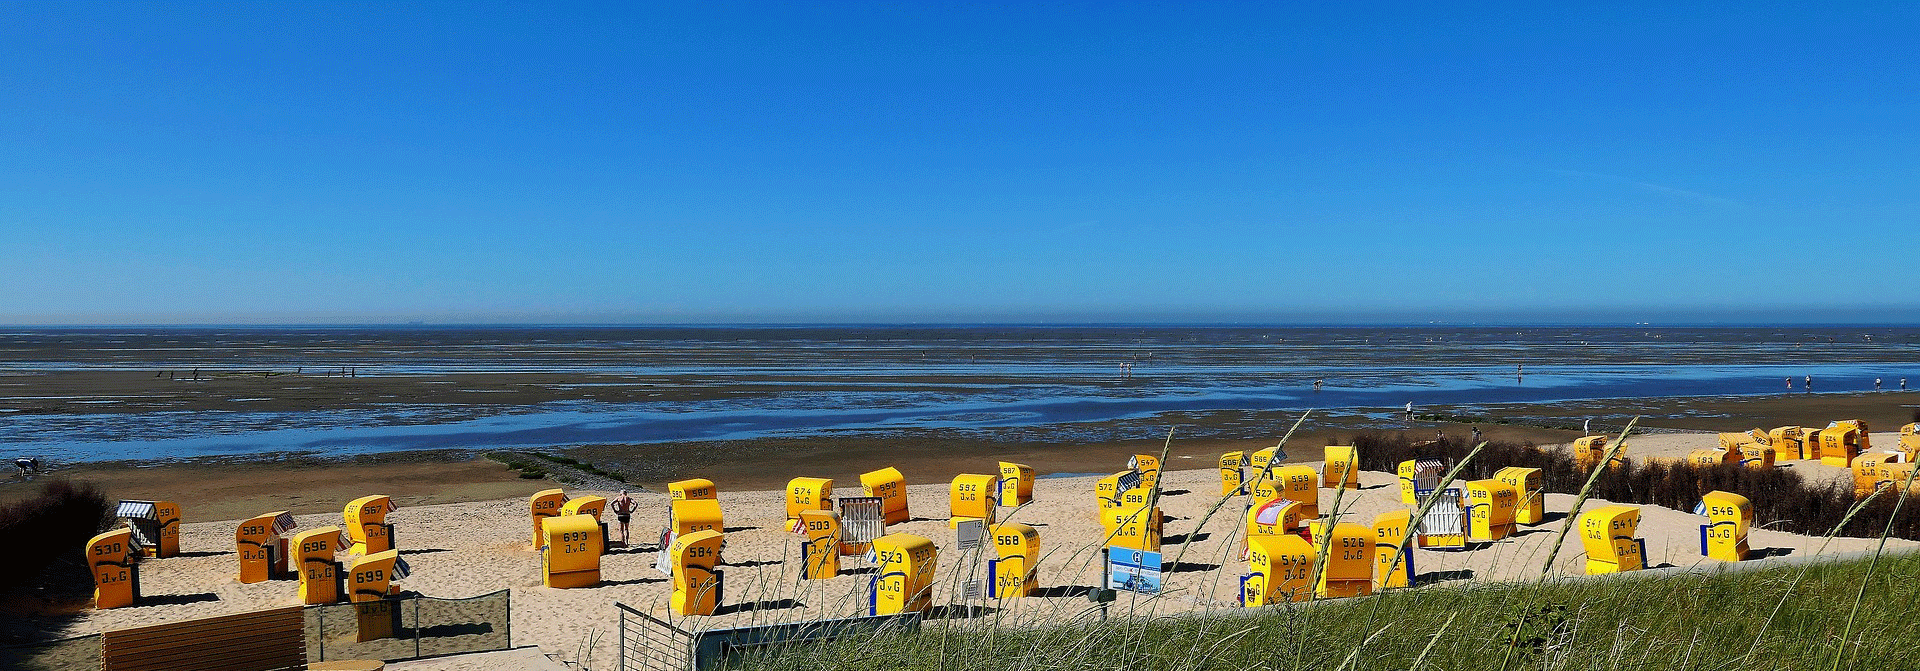 Gelbe Strandkörbe am Strand vom Wattenmeer der Nordsee